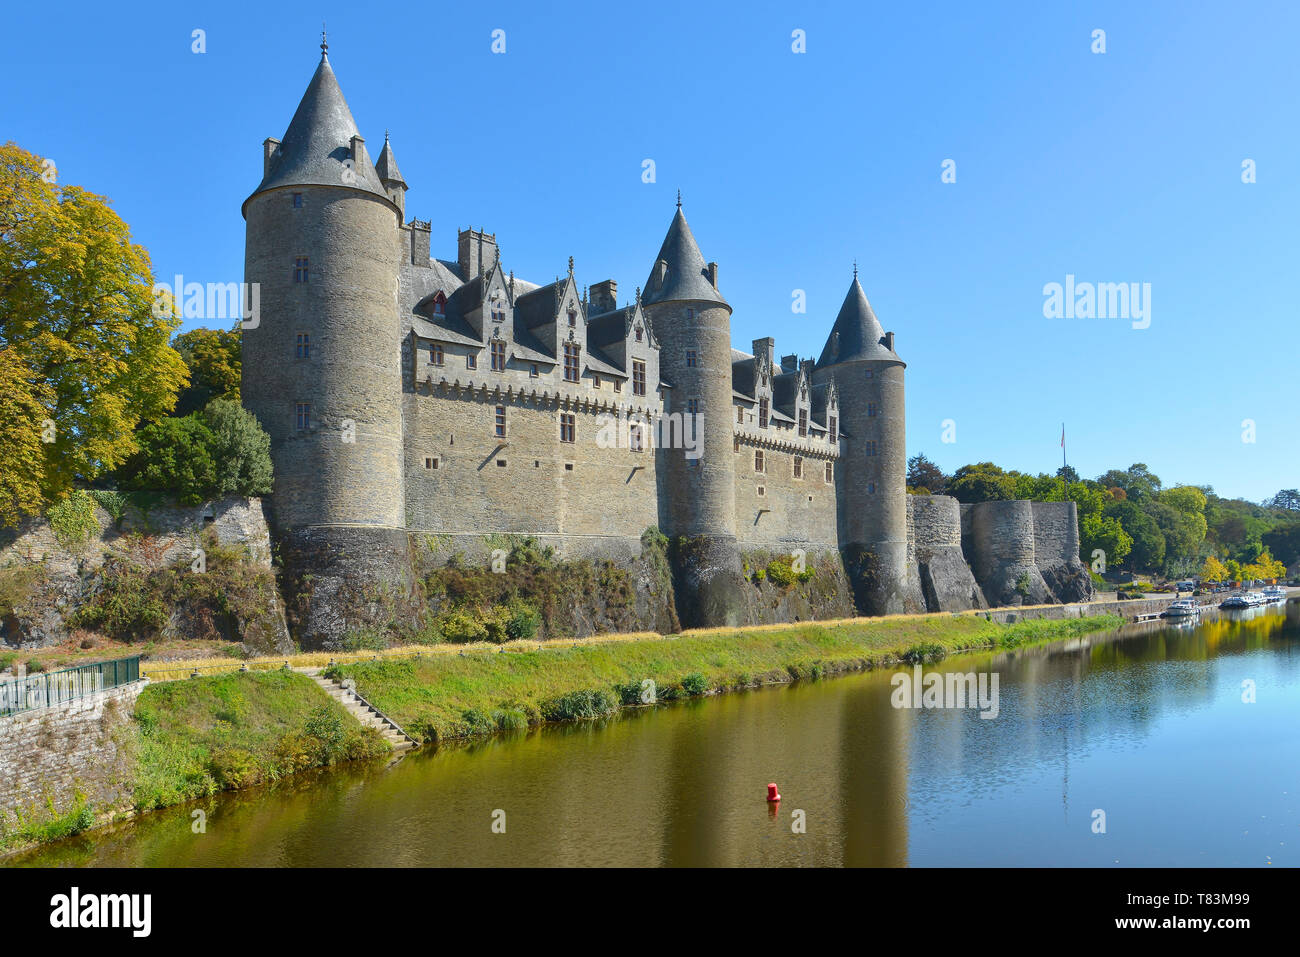 Château de Rohan, sur les rives de l'oust, canal de Nantes à Brest, à Josselin, une commune française, située dans le département du Morbihan en Bretagne en France Banque D'Images